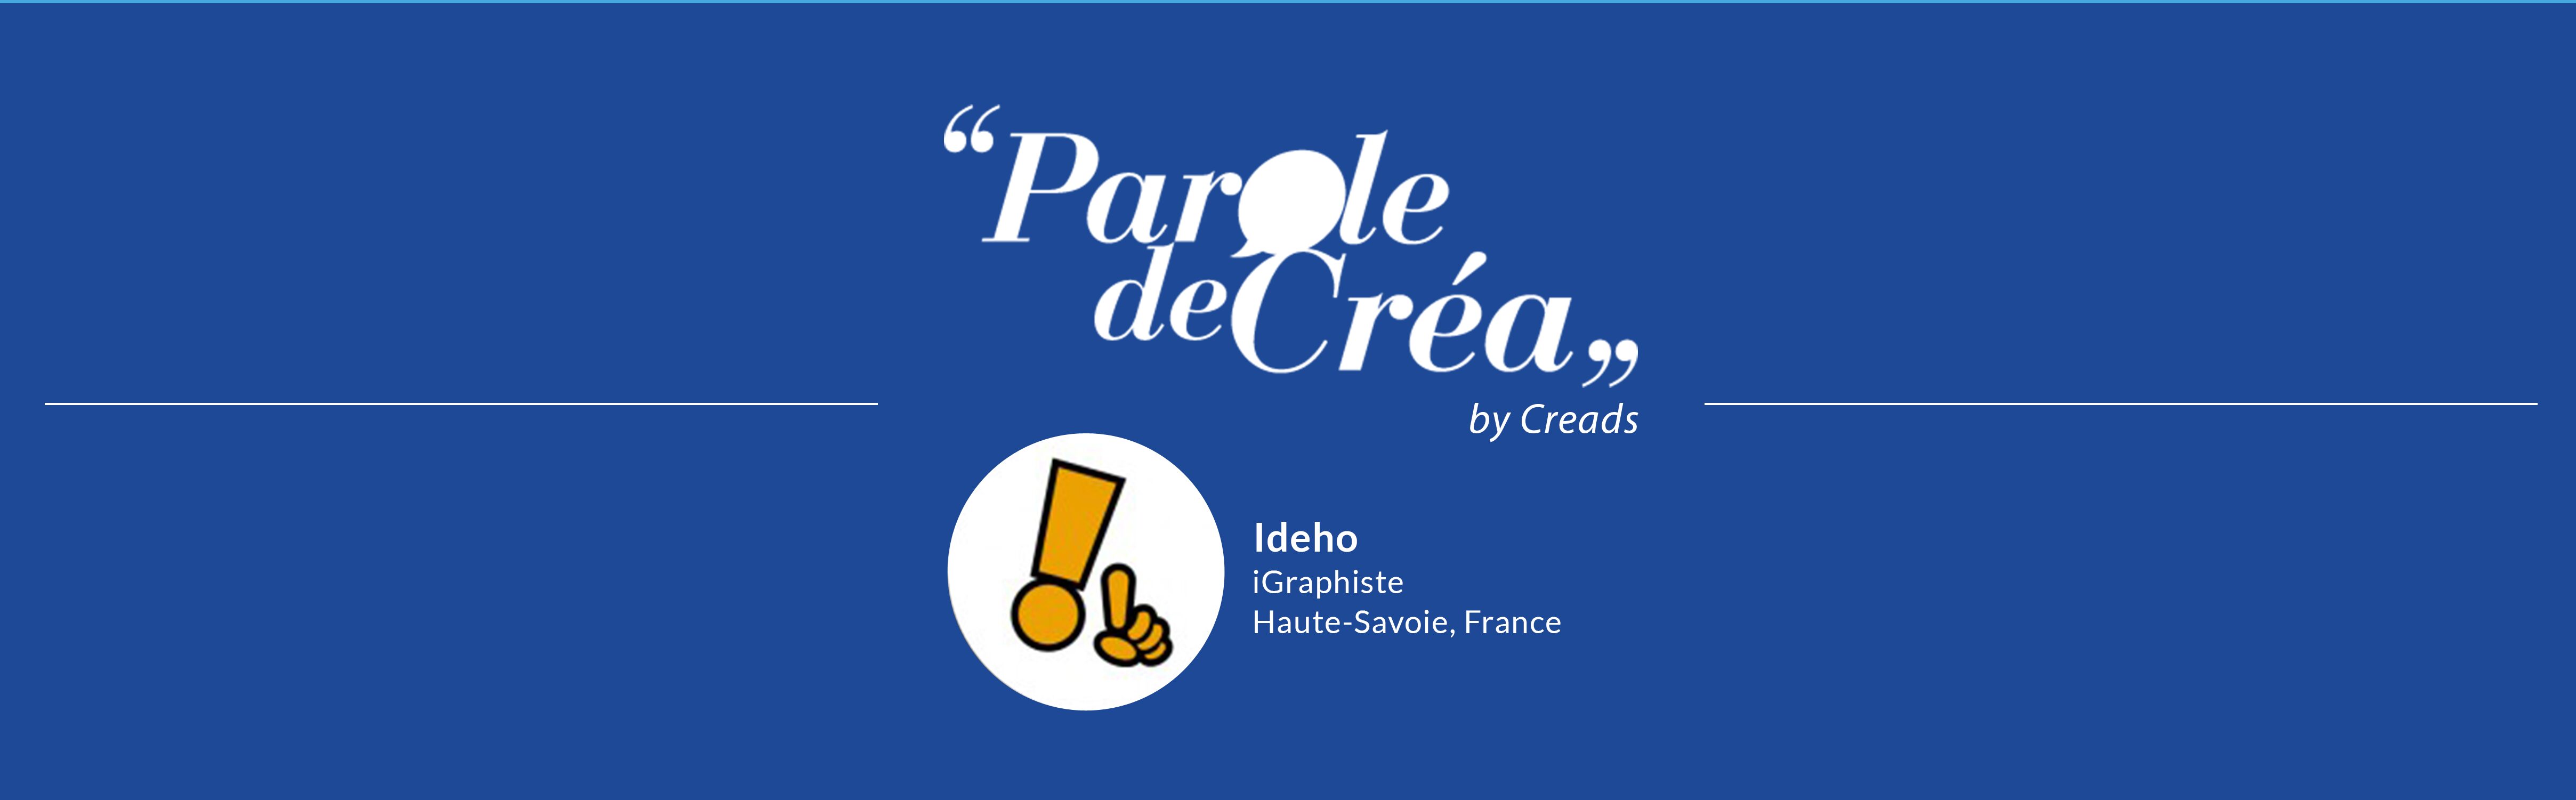 Paroles de Créa - Découvrez l&#039;interview de @Ideho !